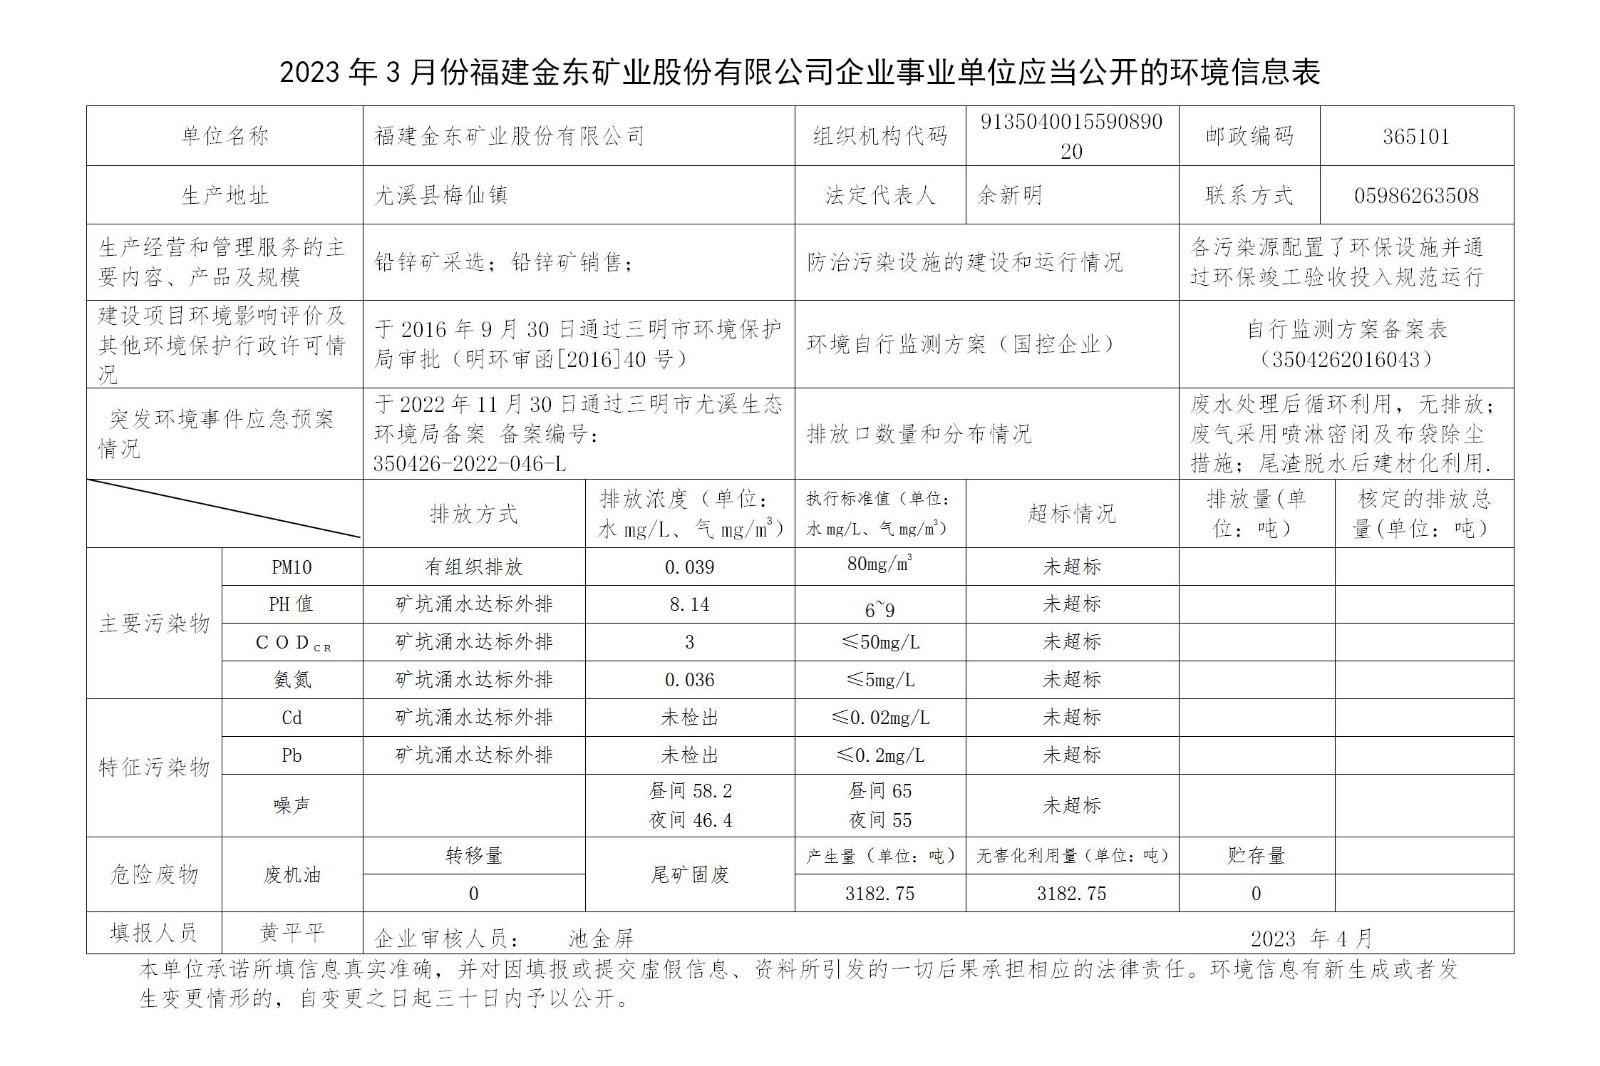 2023年3月份福建金东矿业股份有限公司企业事业单位应当公开的环境信息表_01.jpg